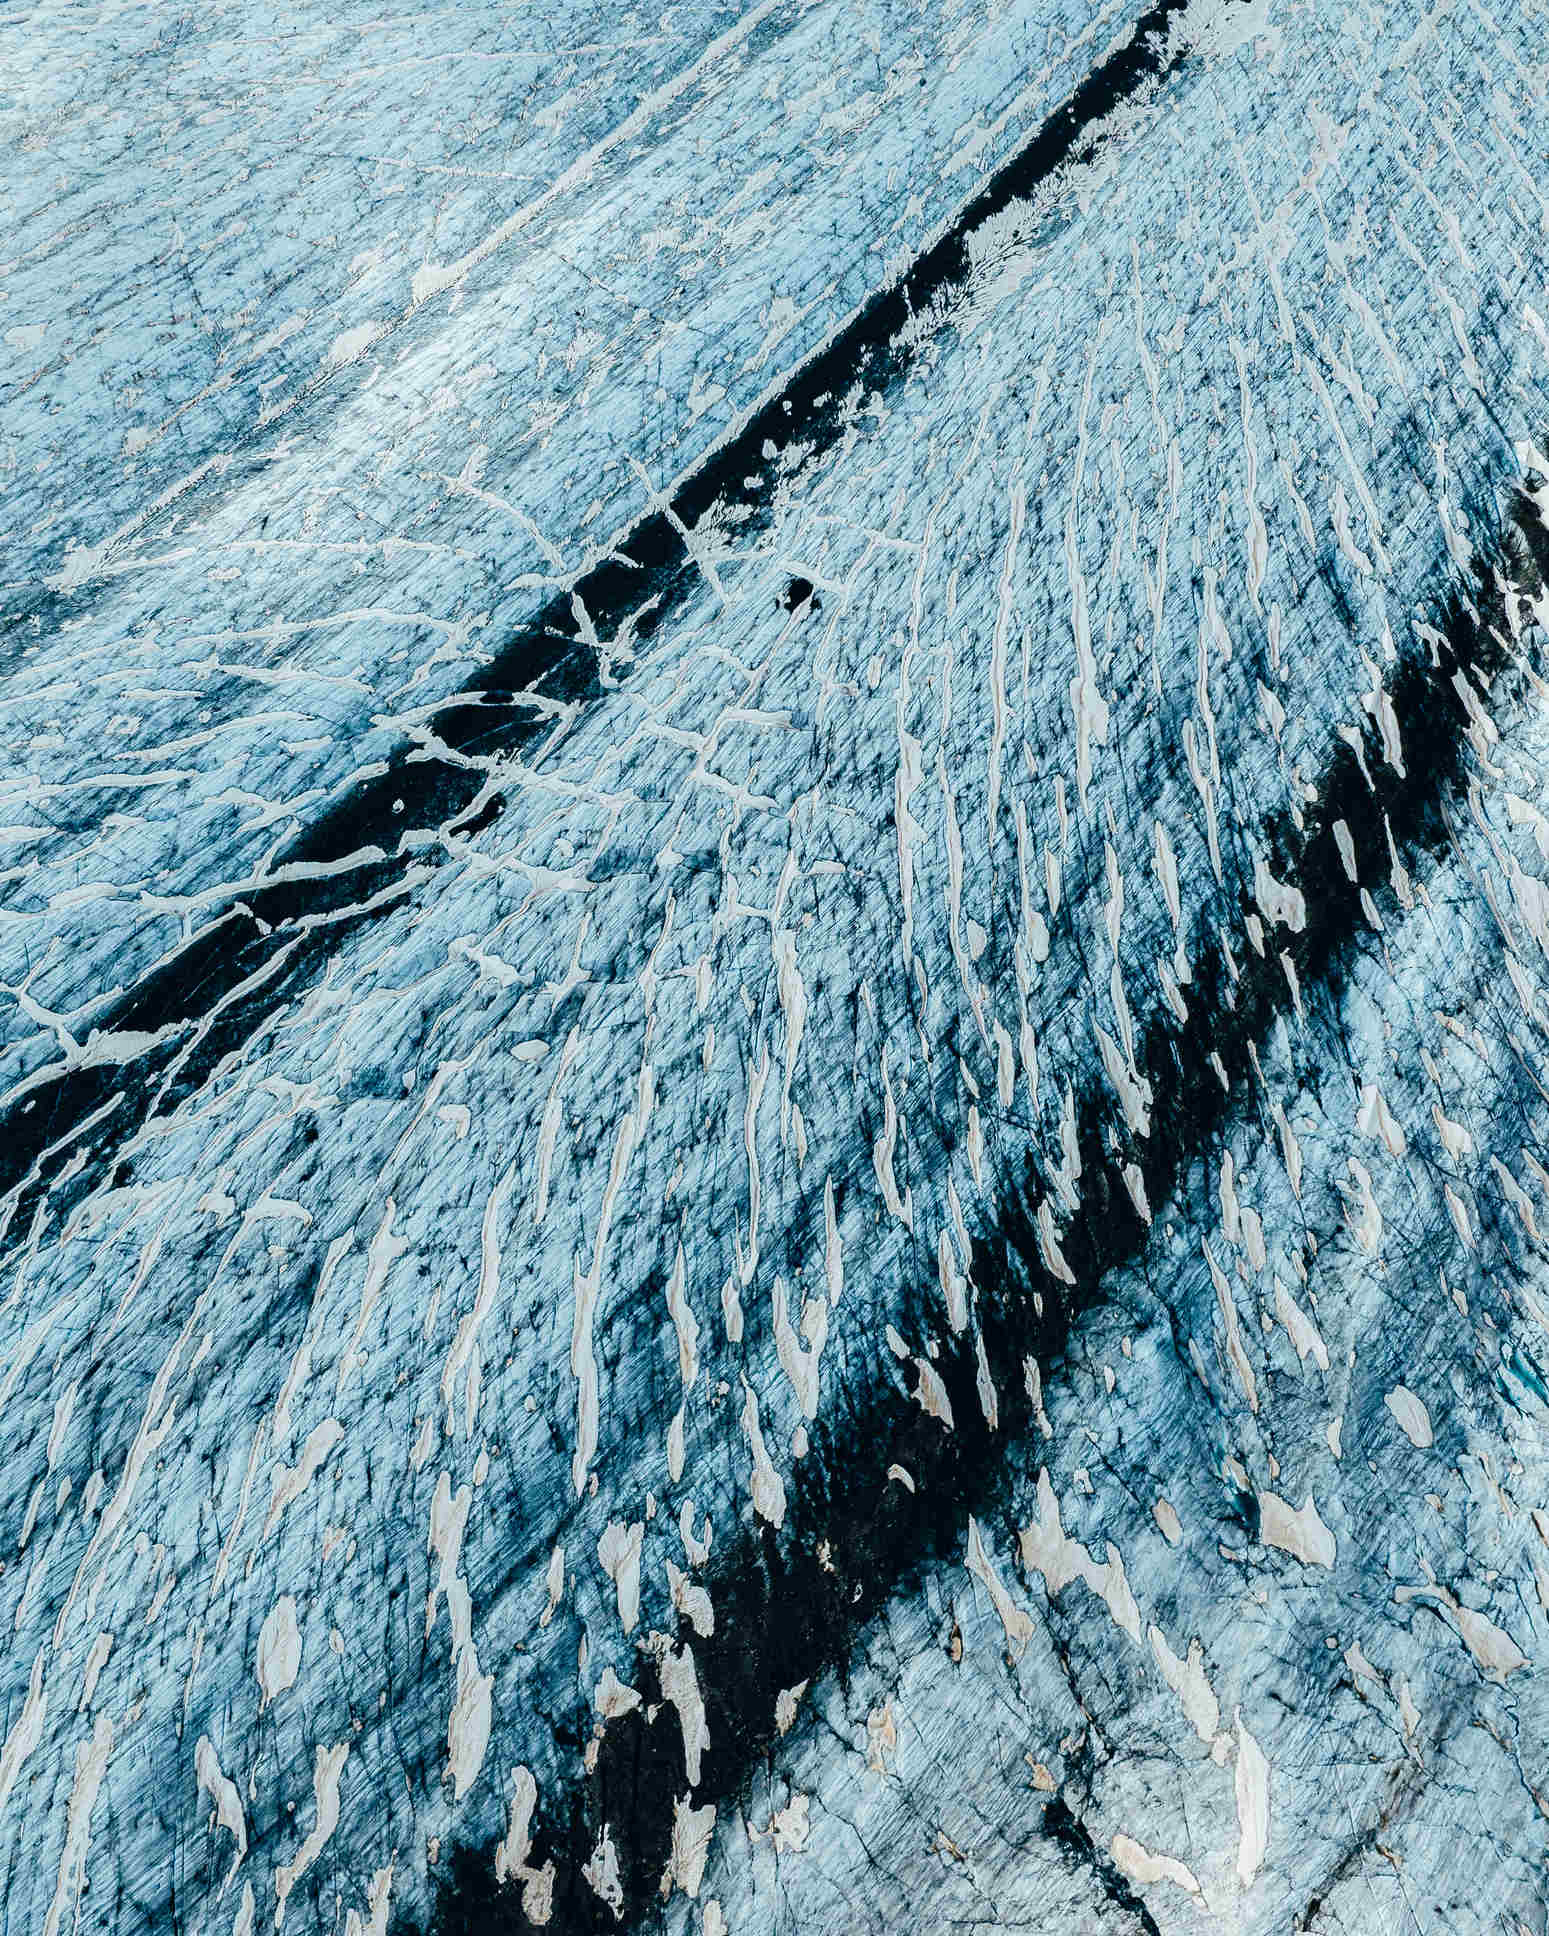 Aerial details of a glacier in Switzerland